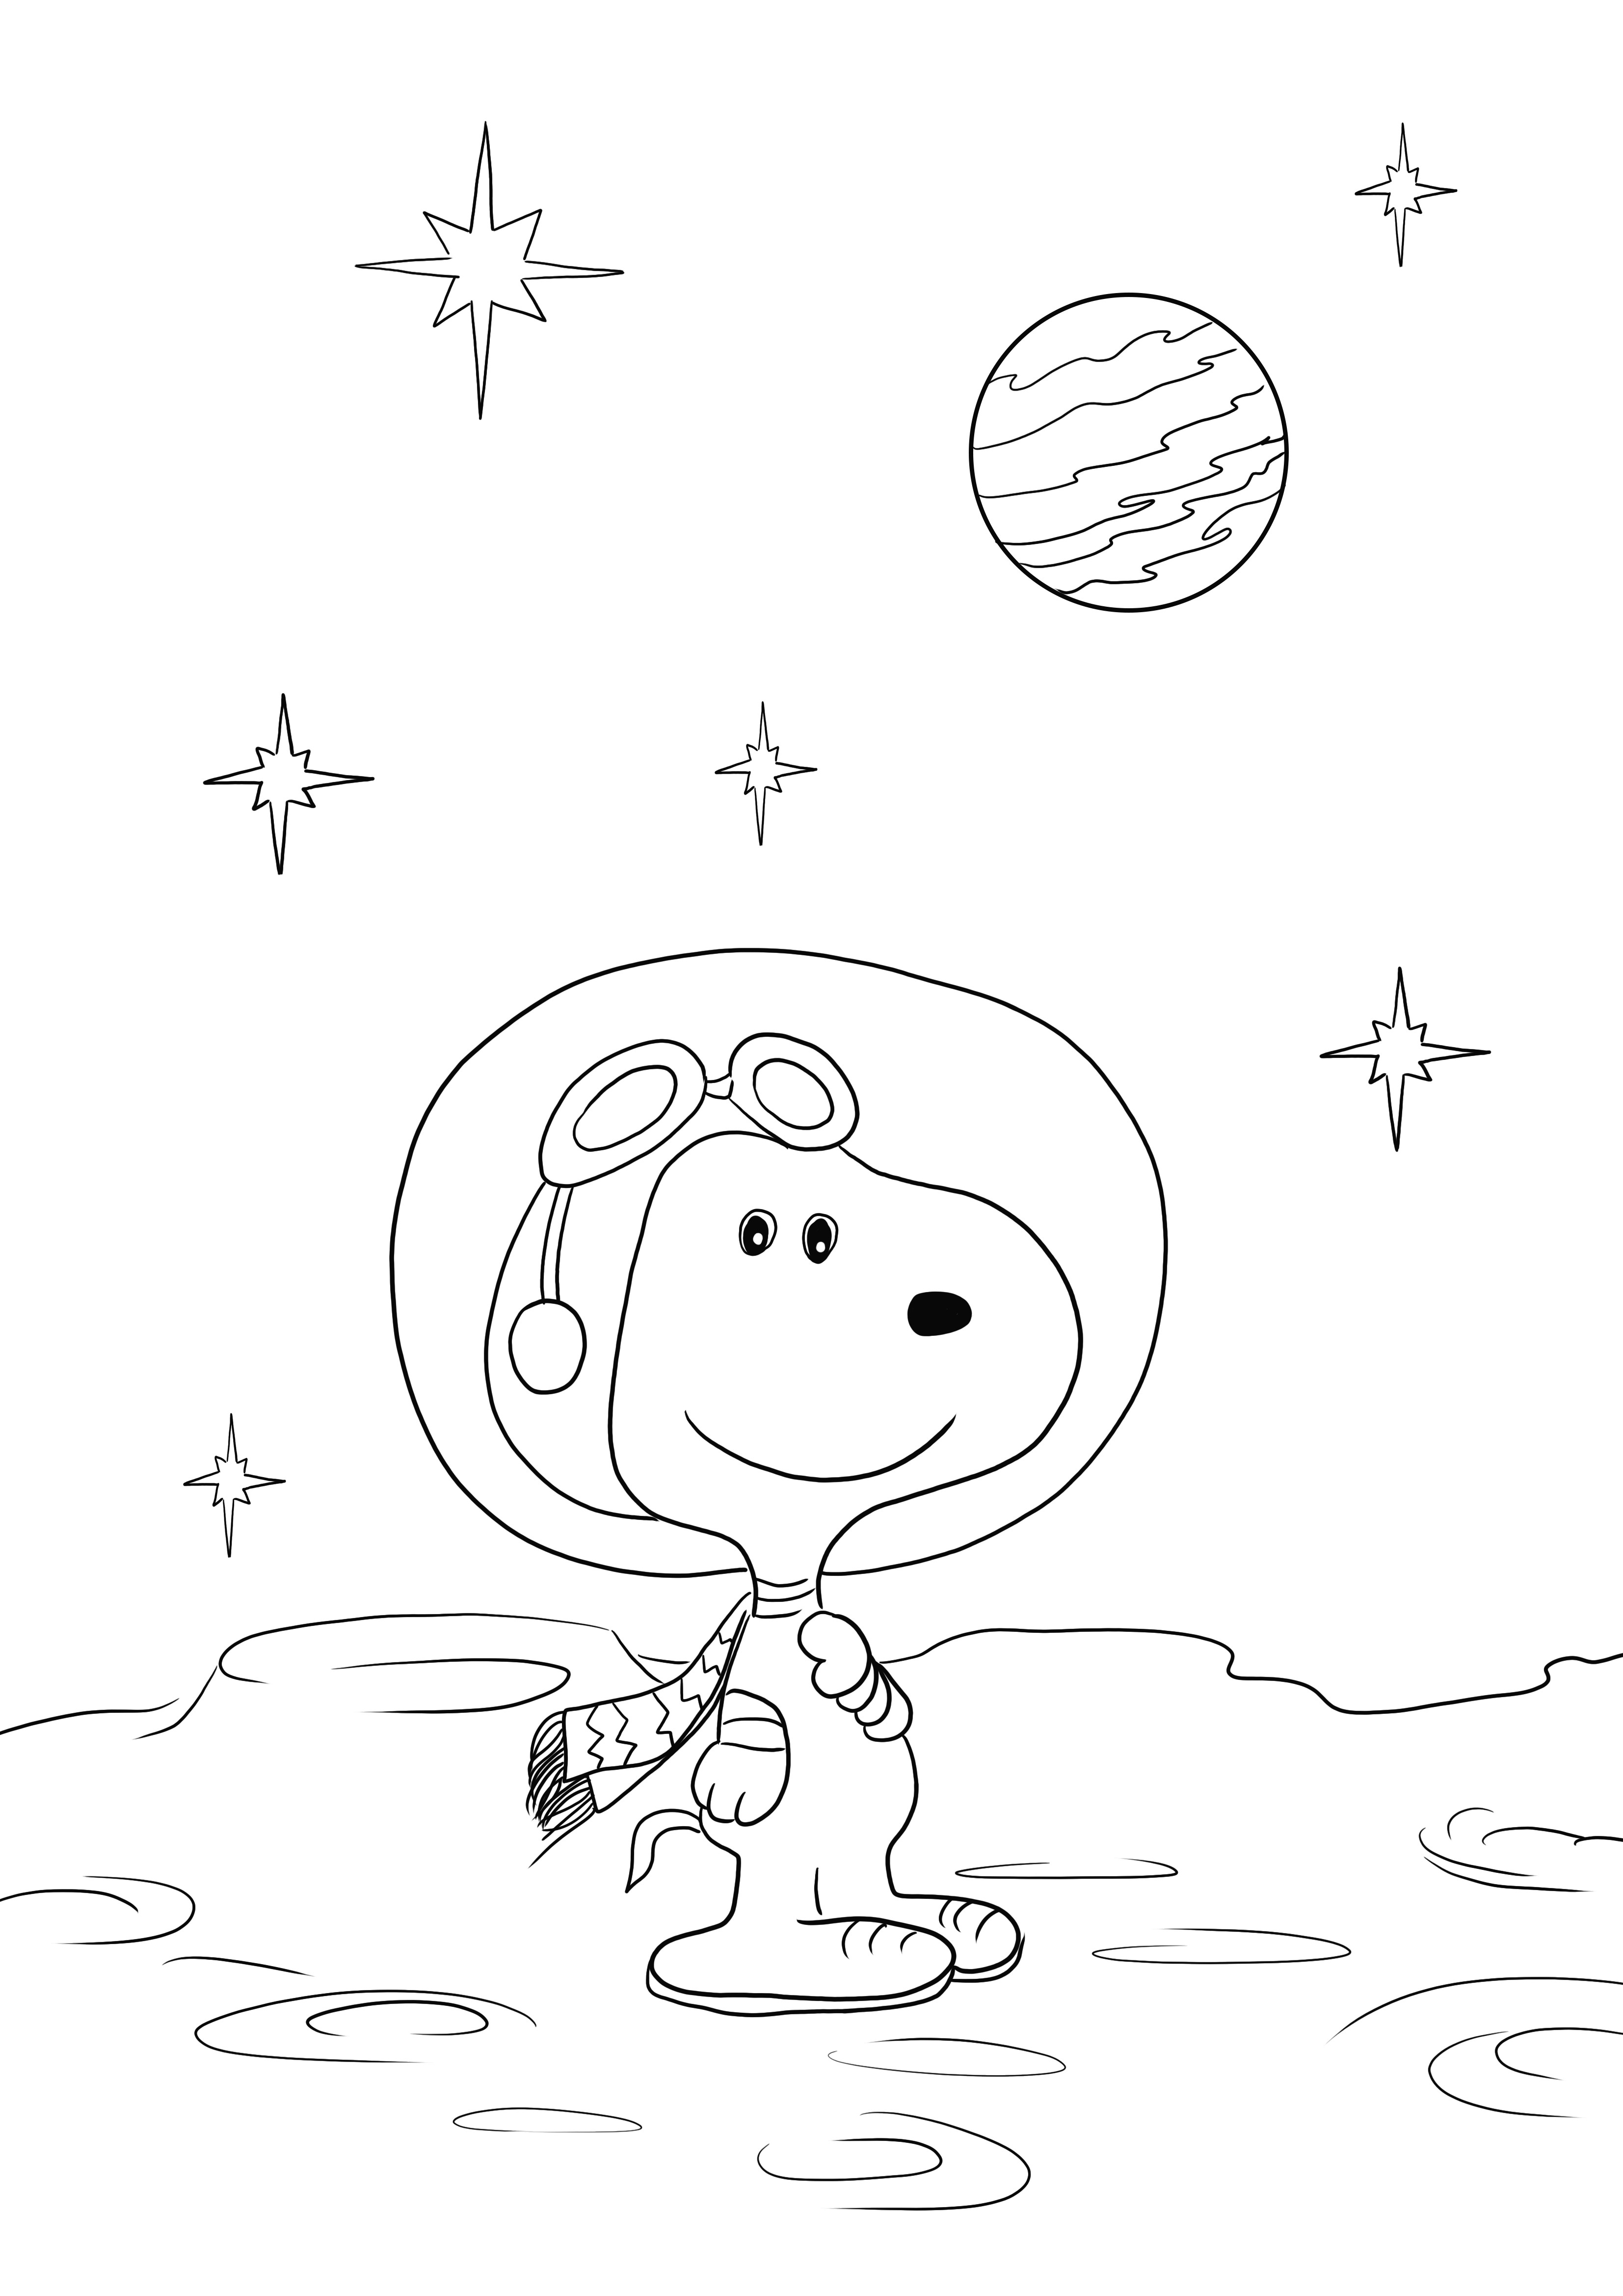 Itt található az ingyenes Snoopy in the Space lapunk, amelyet letölthet vagy nyomtathat és színezhet